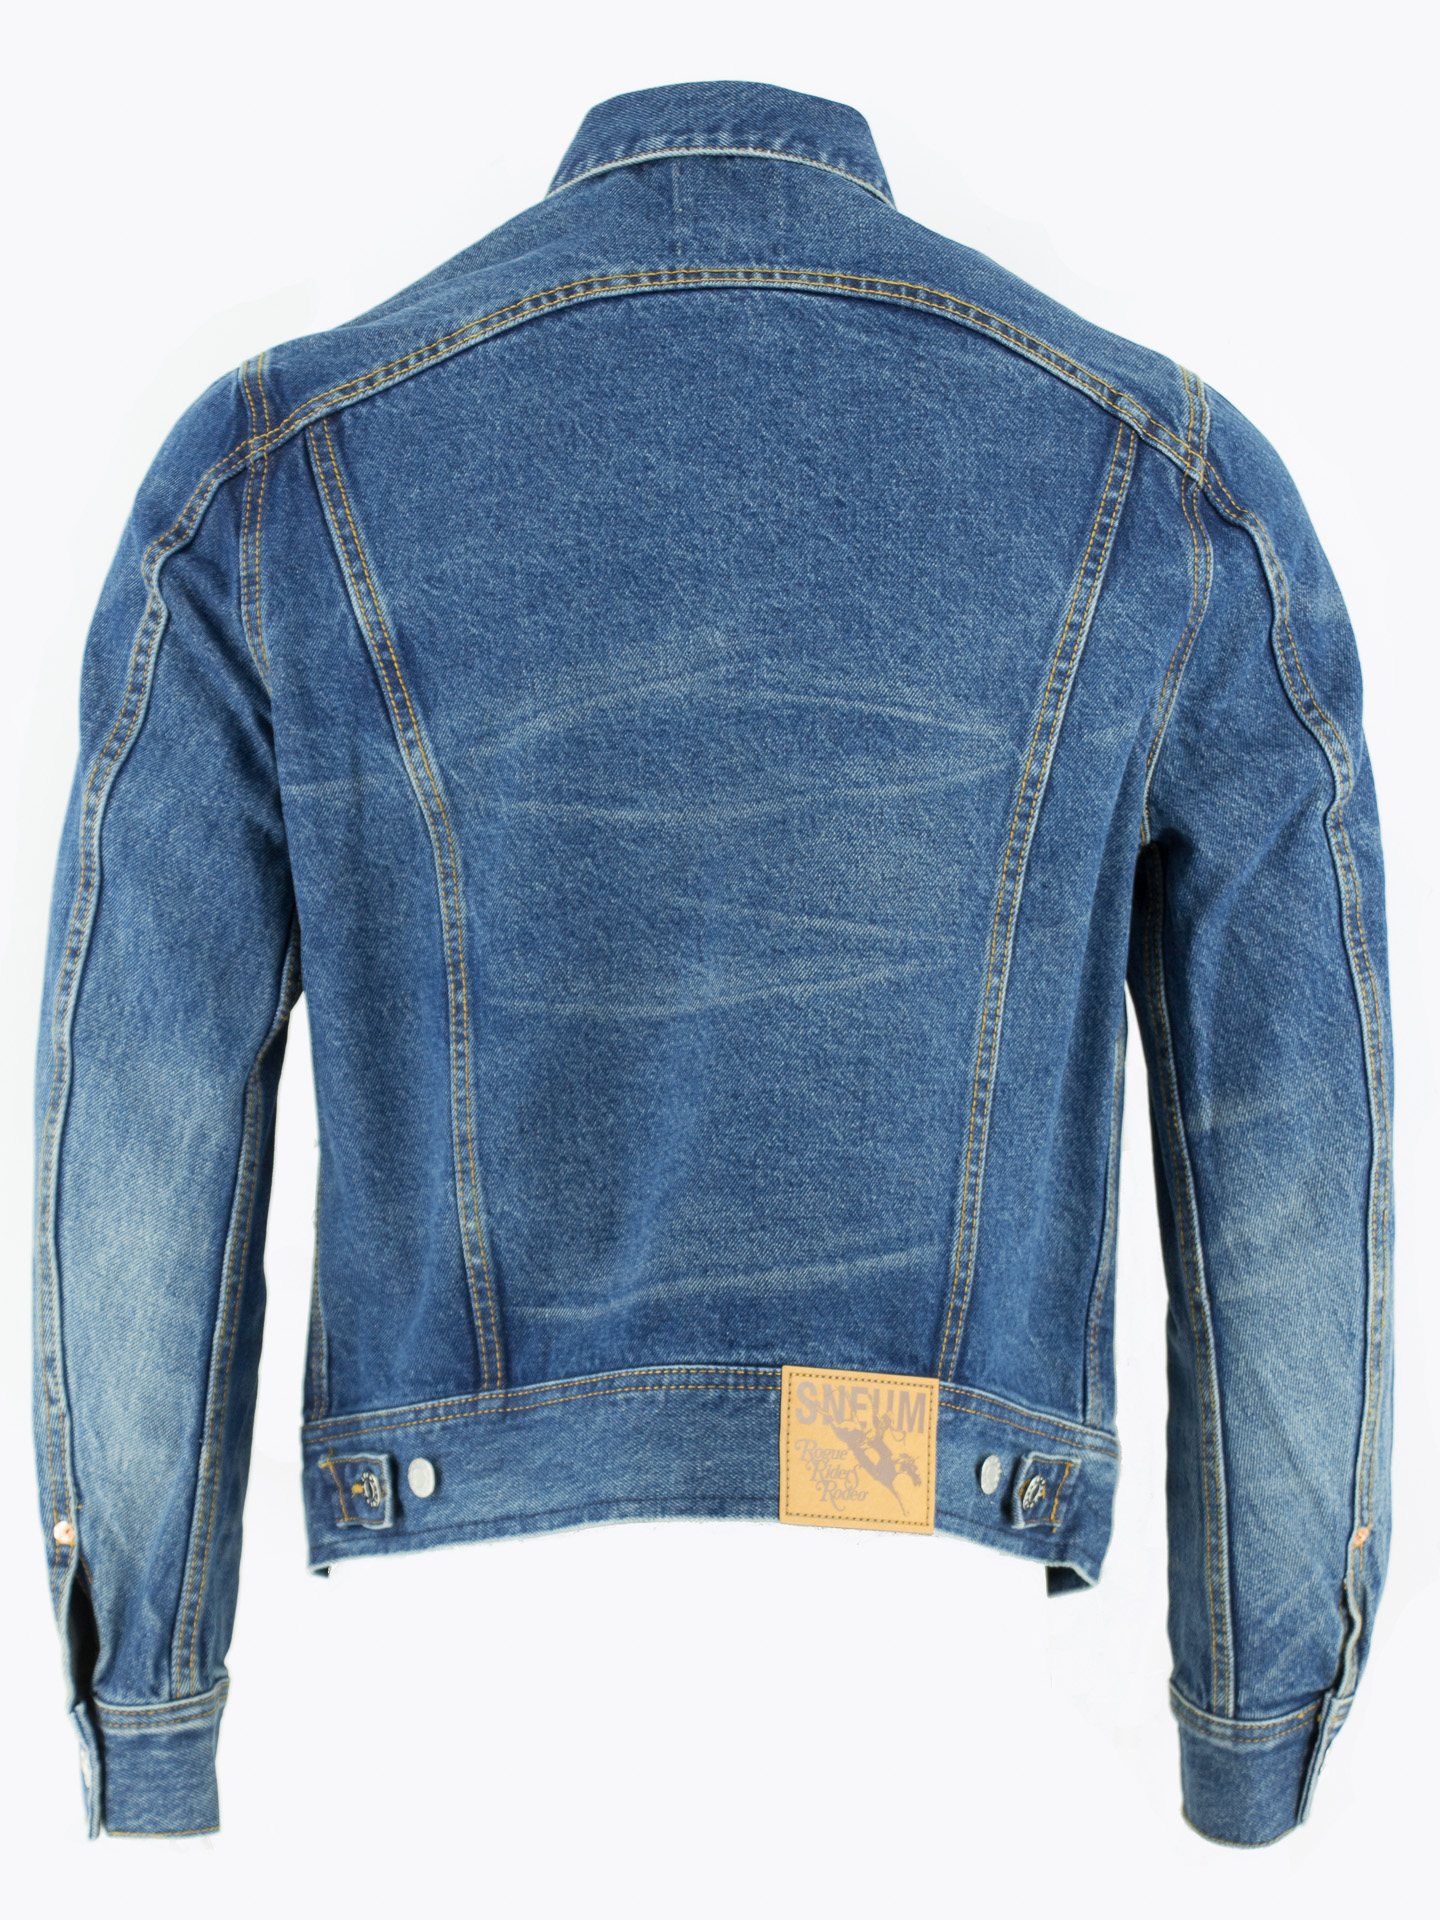 RRR Rider Cone® denim jacket in vintage wash 